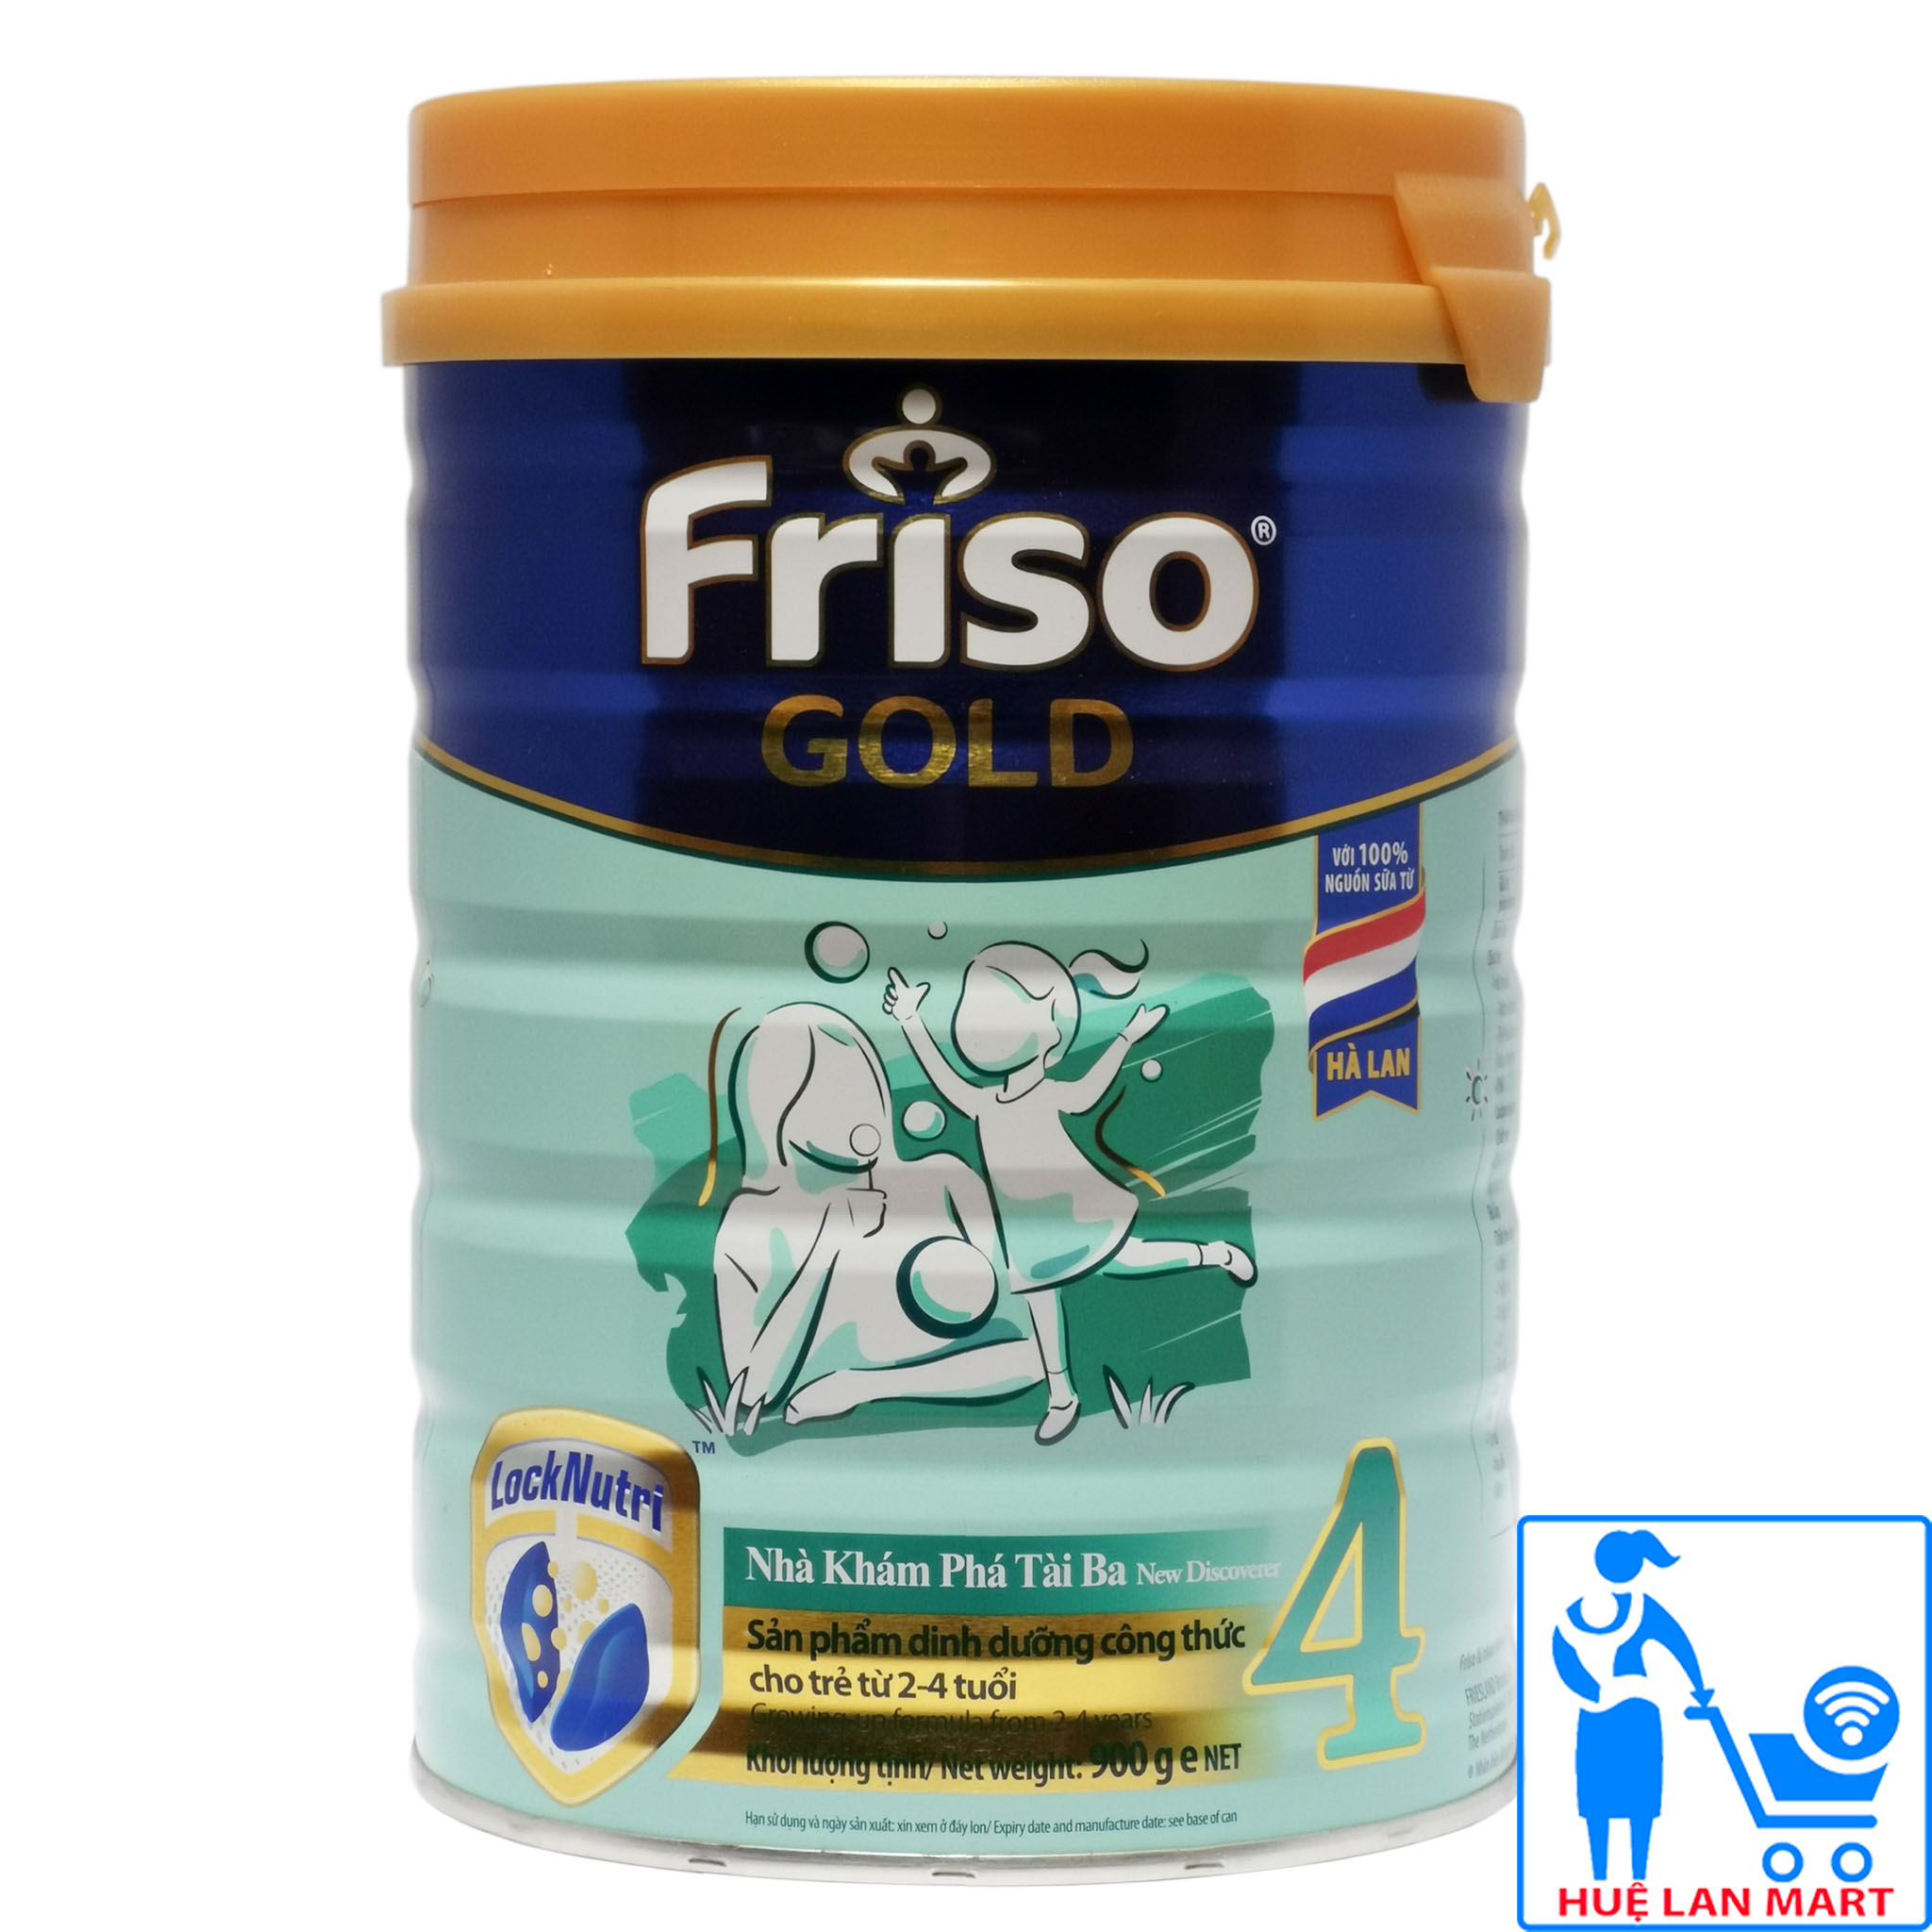 CHÍNH HÃNG Sữa Bột Friesland Campina Friso Gold 4 - Hộp 850g Sản phẩm dinh